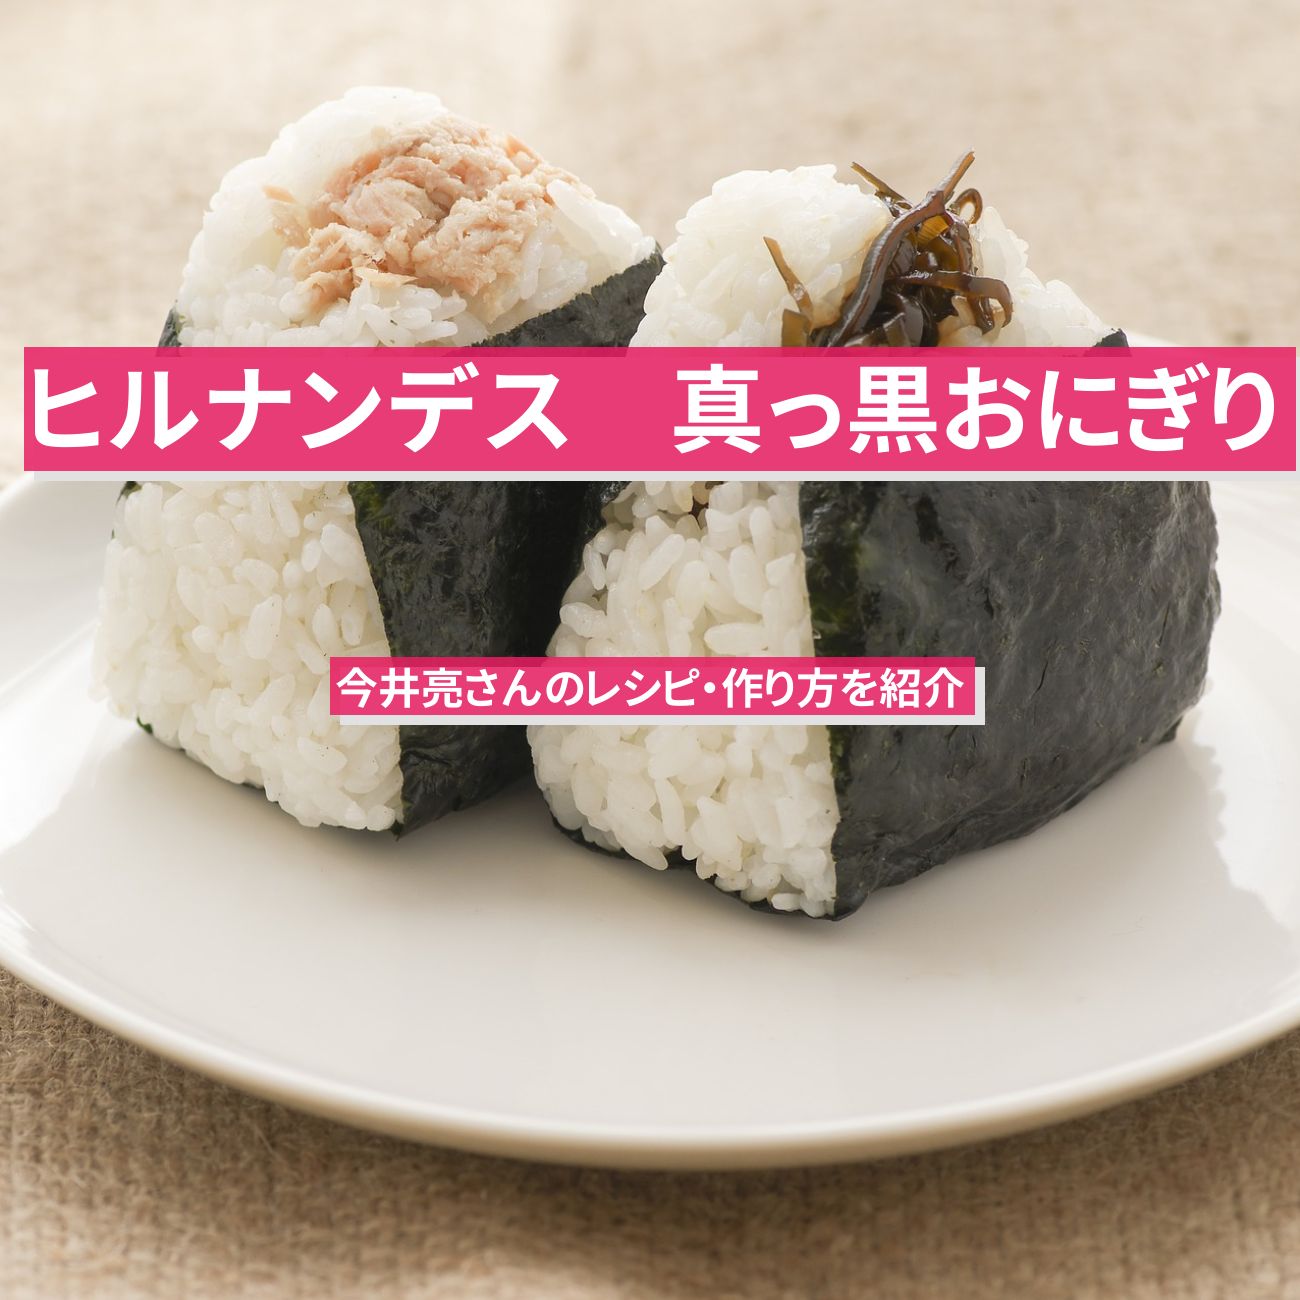 【ヒルナンデス】真っ黒な『黒黒黒黒おにぎり』今井亮さんのレシピ・作り方を紹介